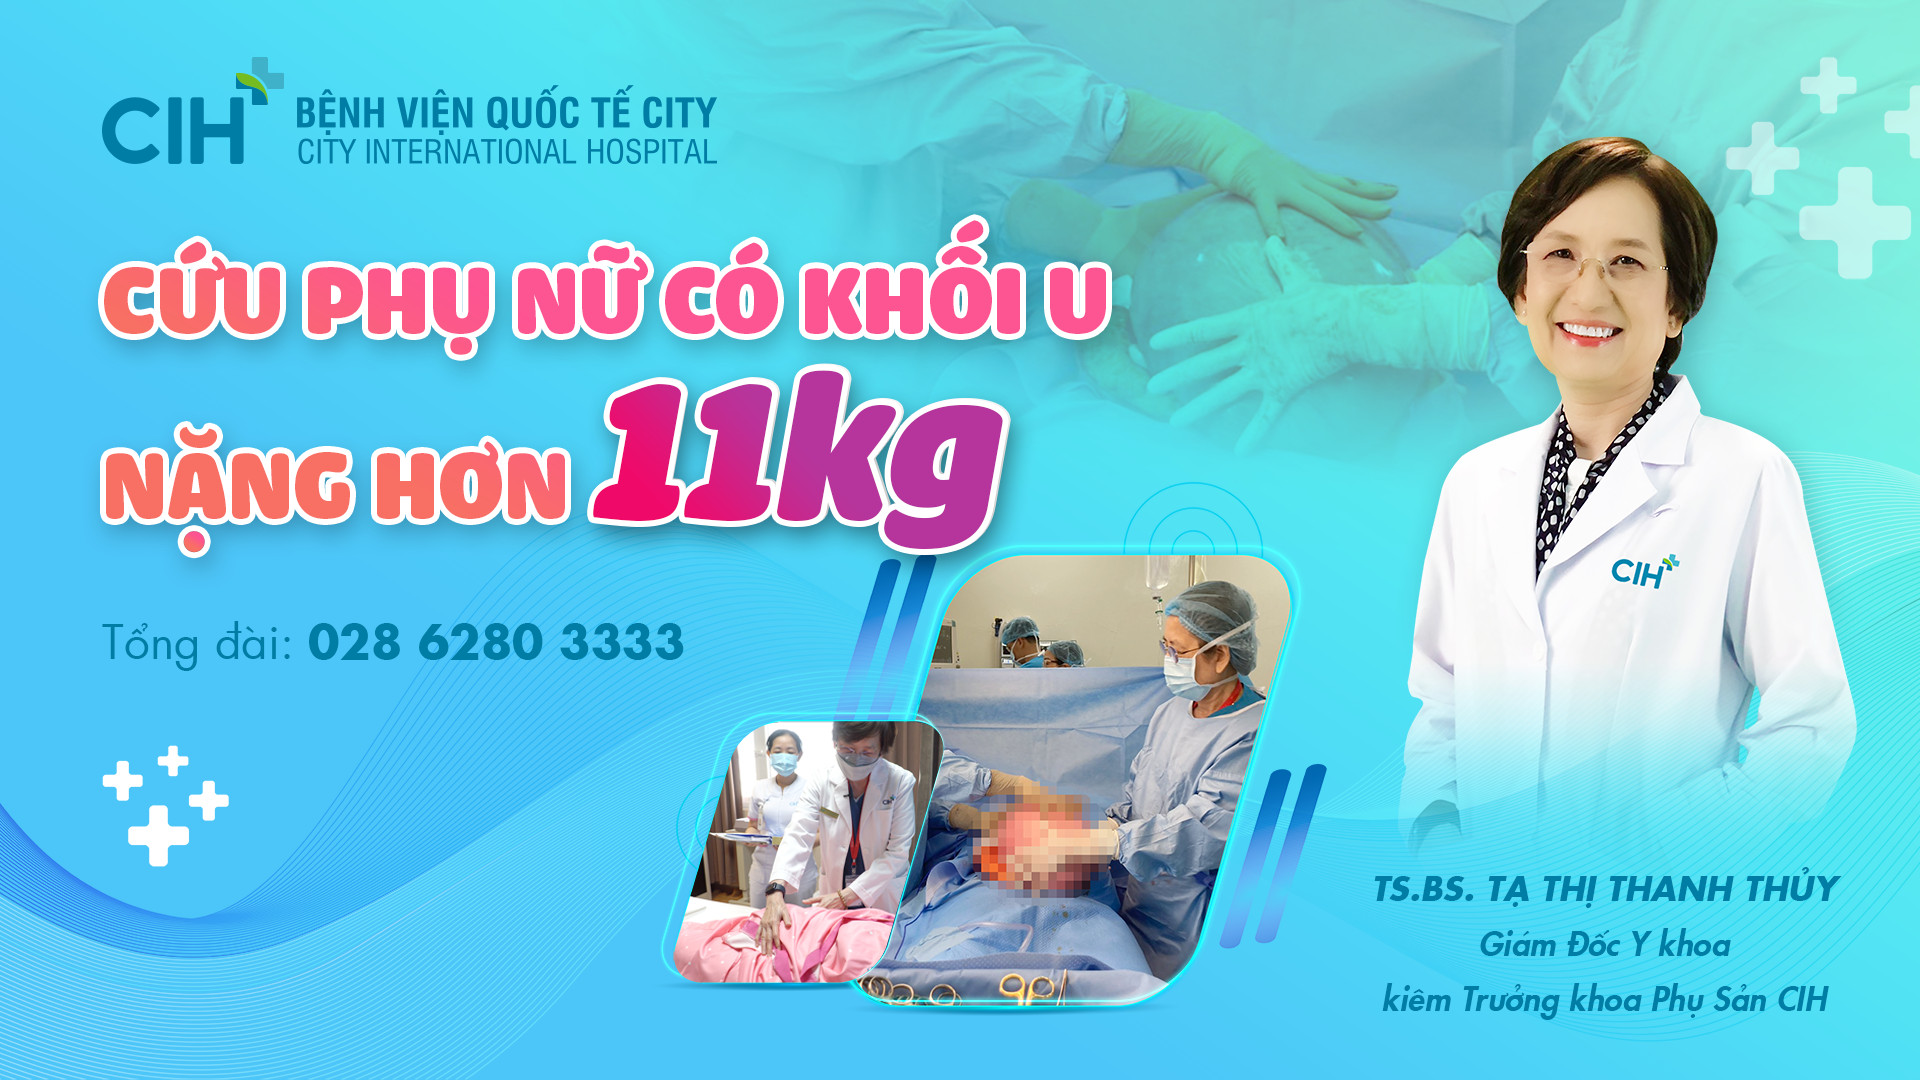 Truyền hình Tuổi Trẻ - Phẫu thuật lấy khối u 11 kg cho nữ bệnh nhân 